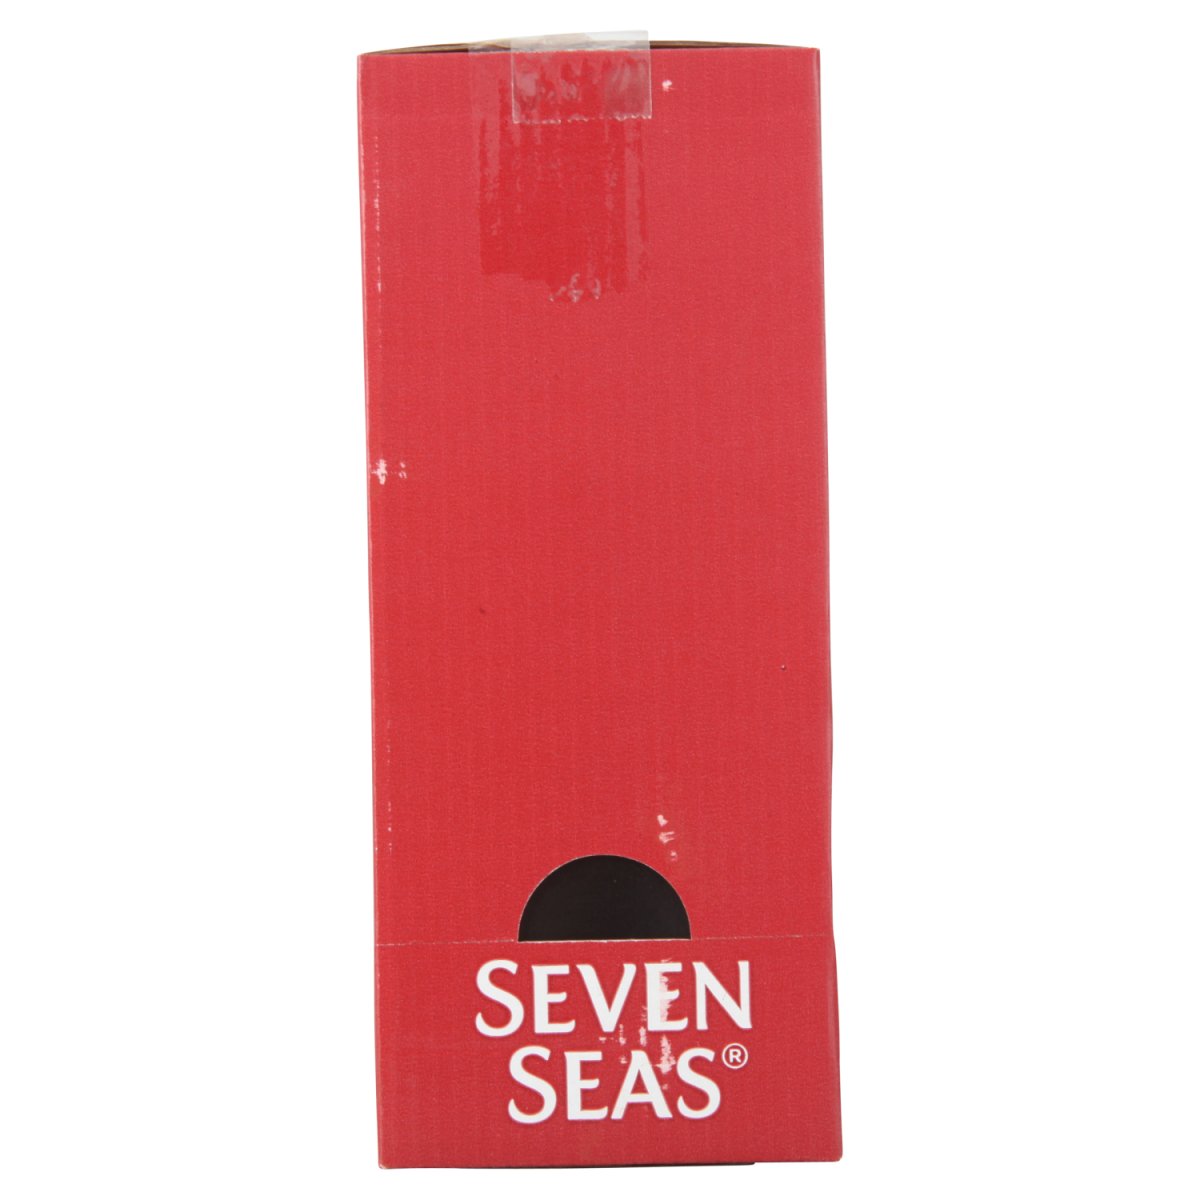 Seven Seas Trad Clo Liq - Intamarque - Wholesale 5012335314207